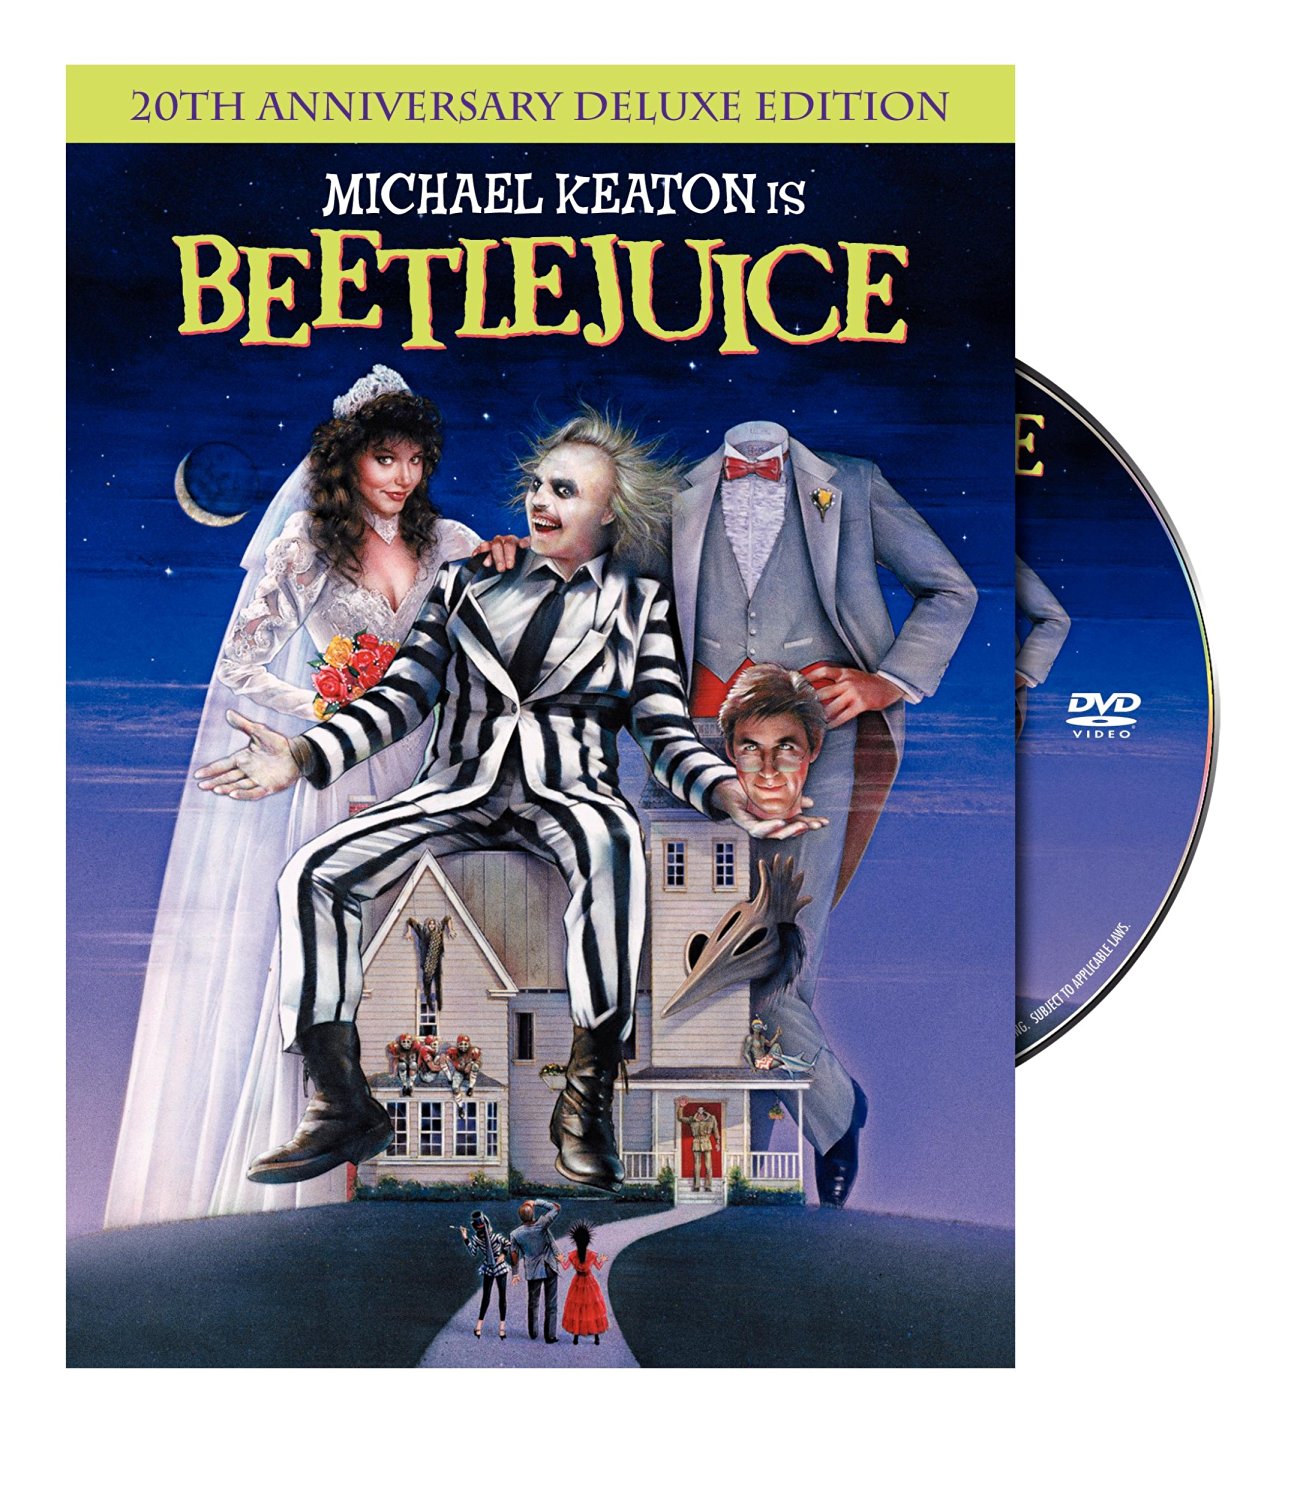 Beetlejuice on DVD – Just $3.99!